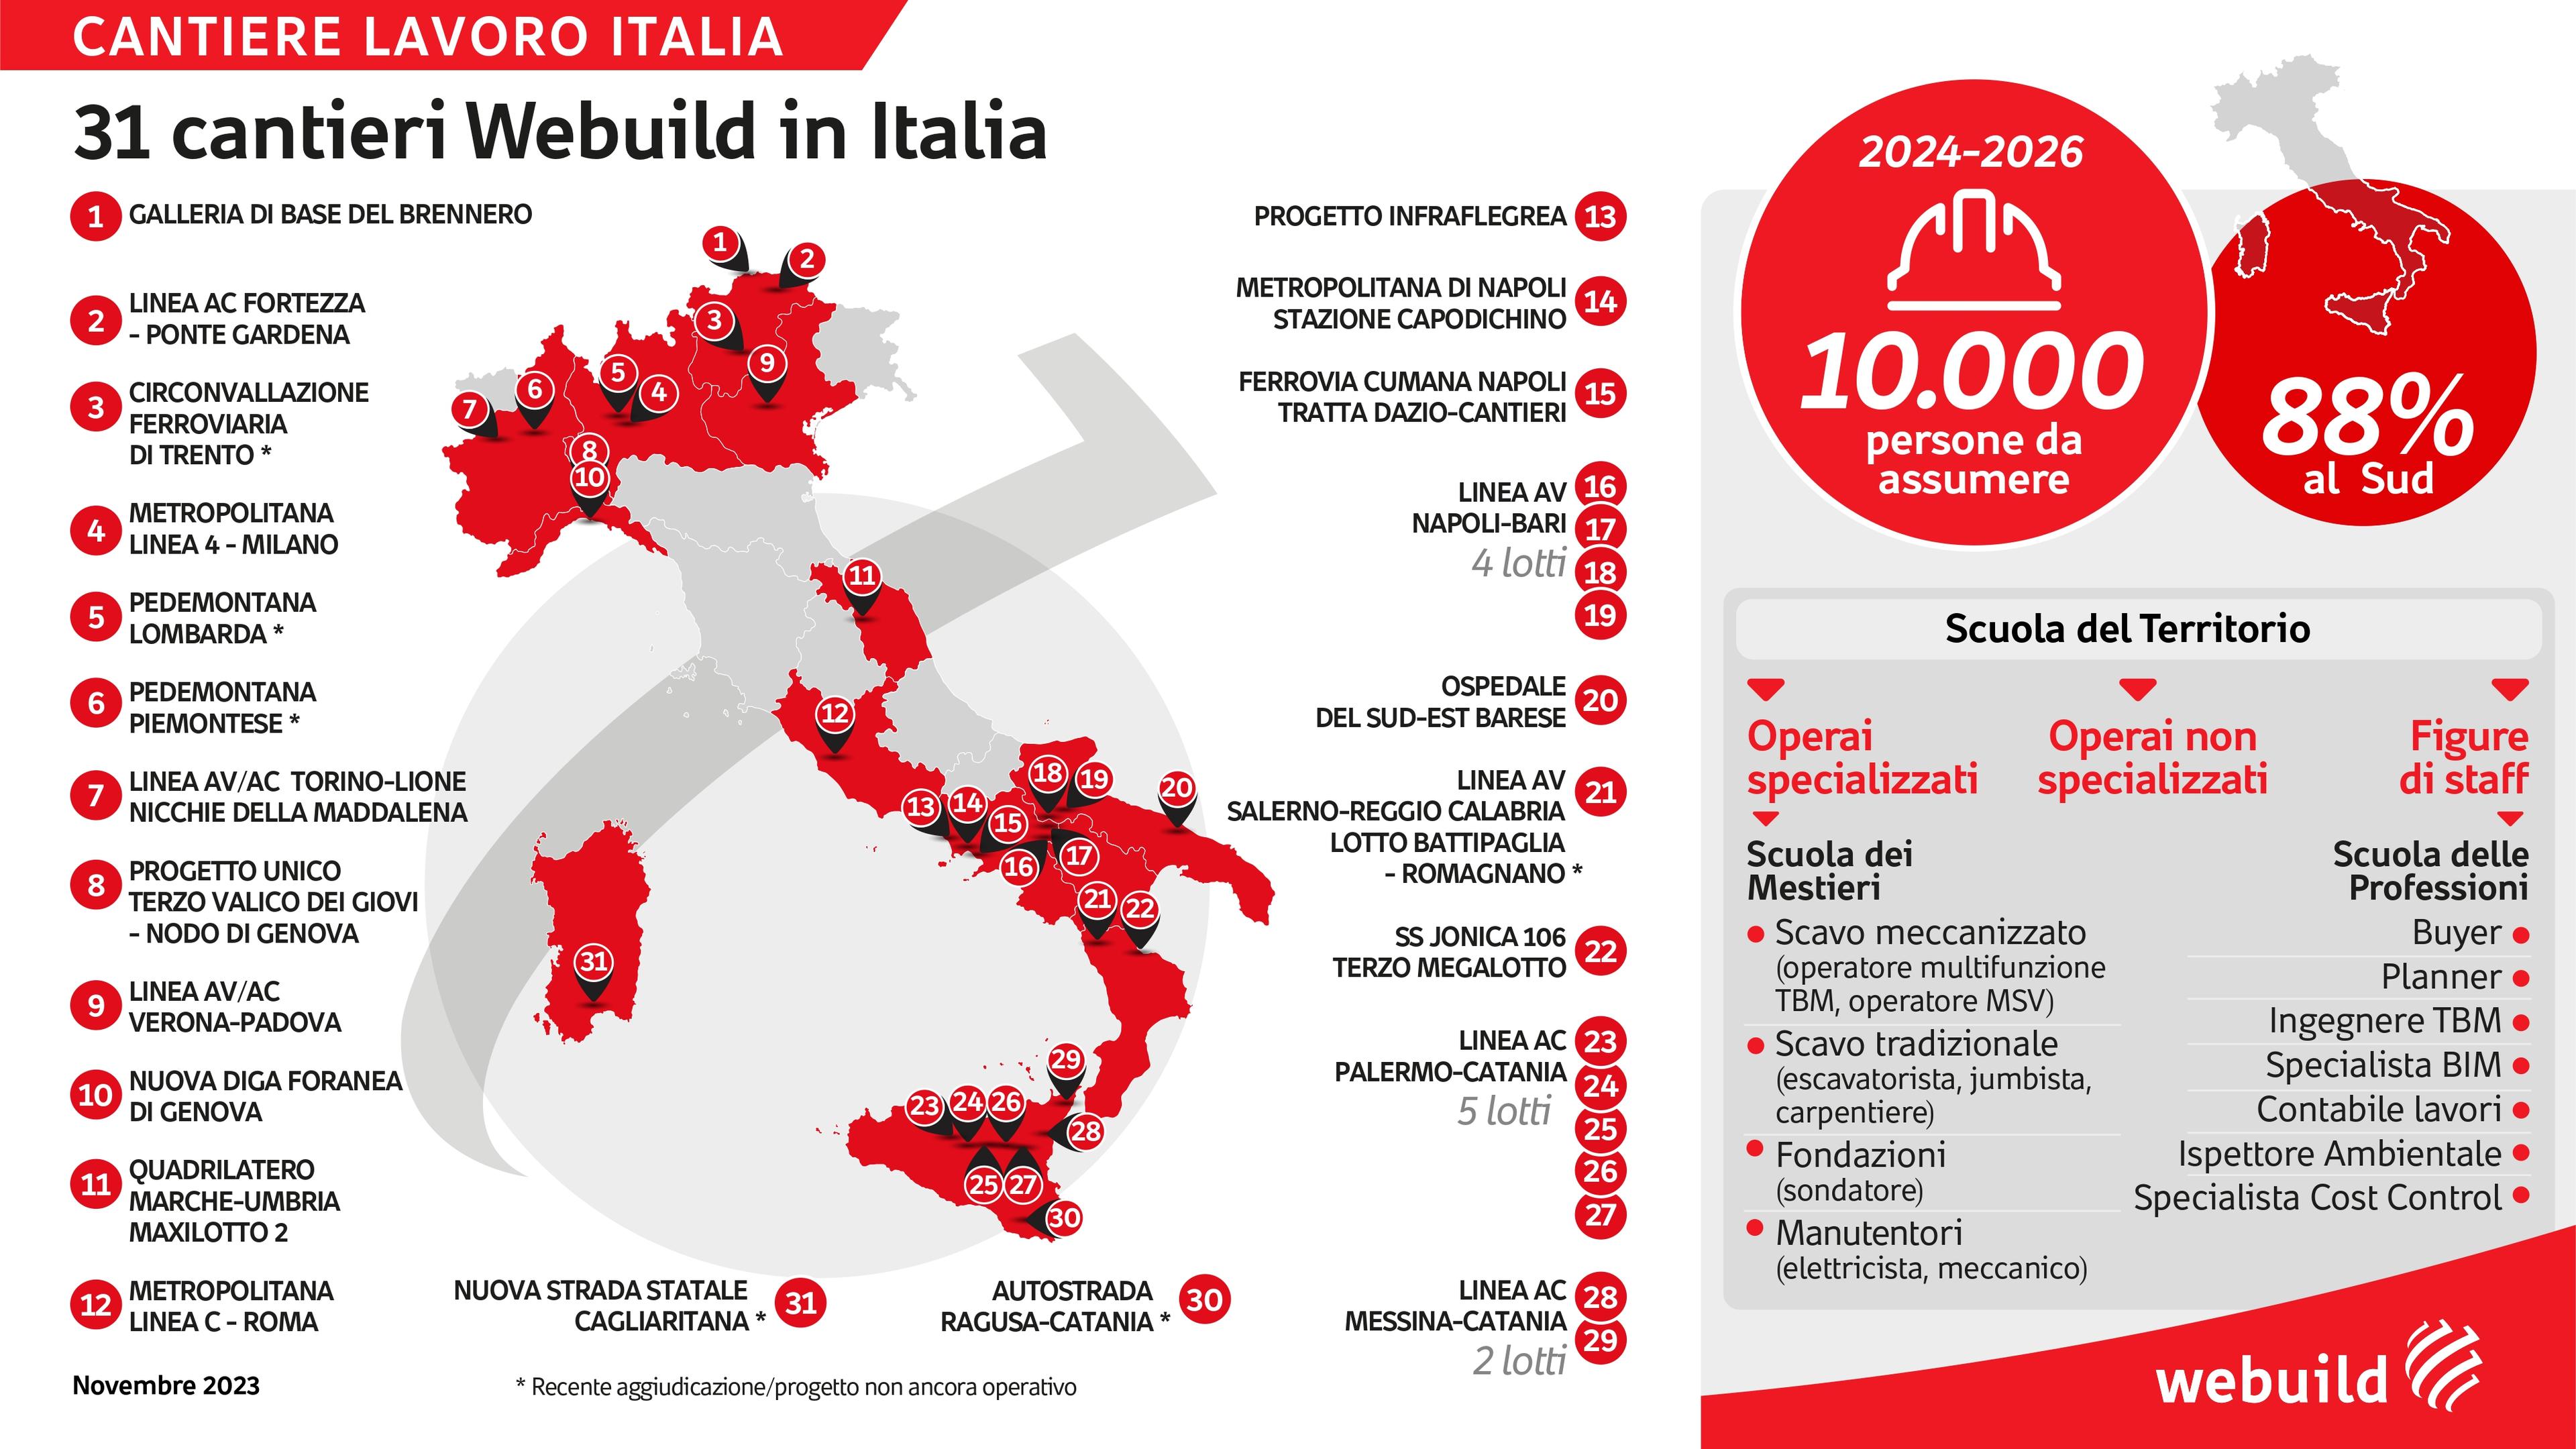 Cantiere Lavoro Italia. 31 progetti Webuild in Italia